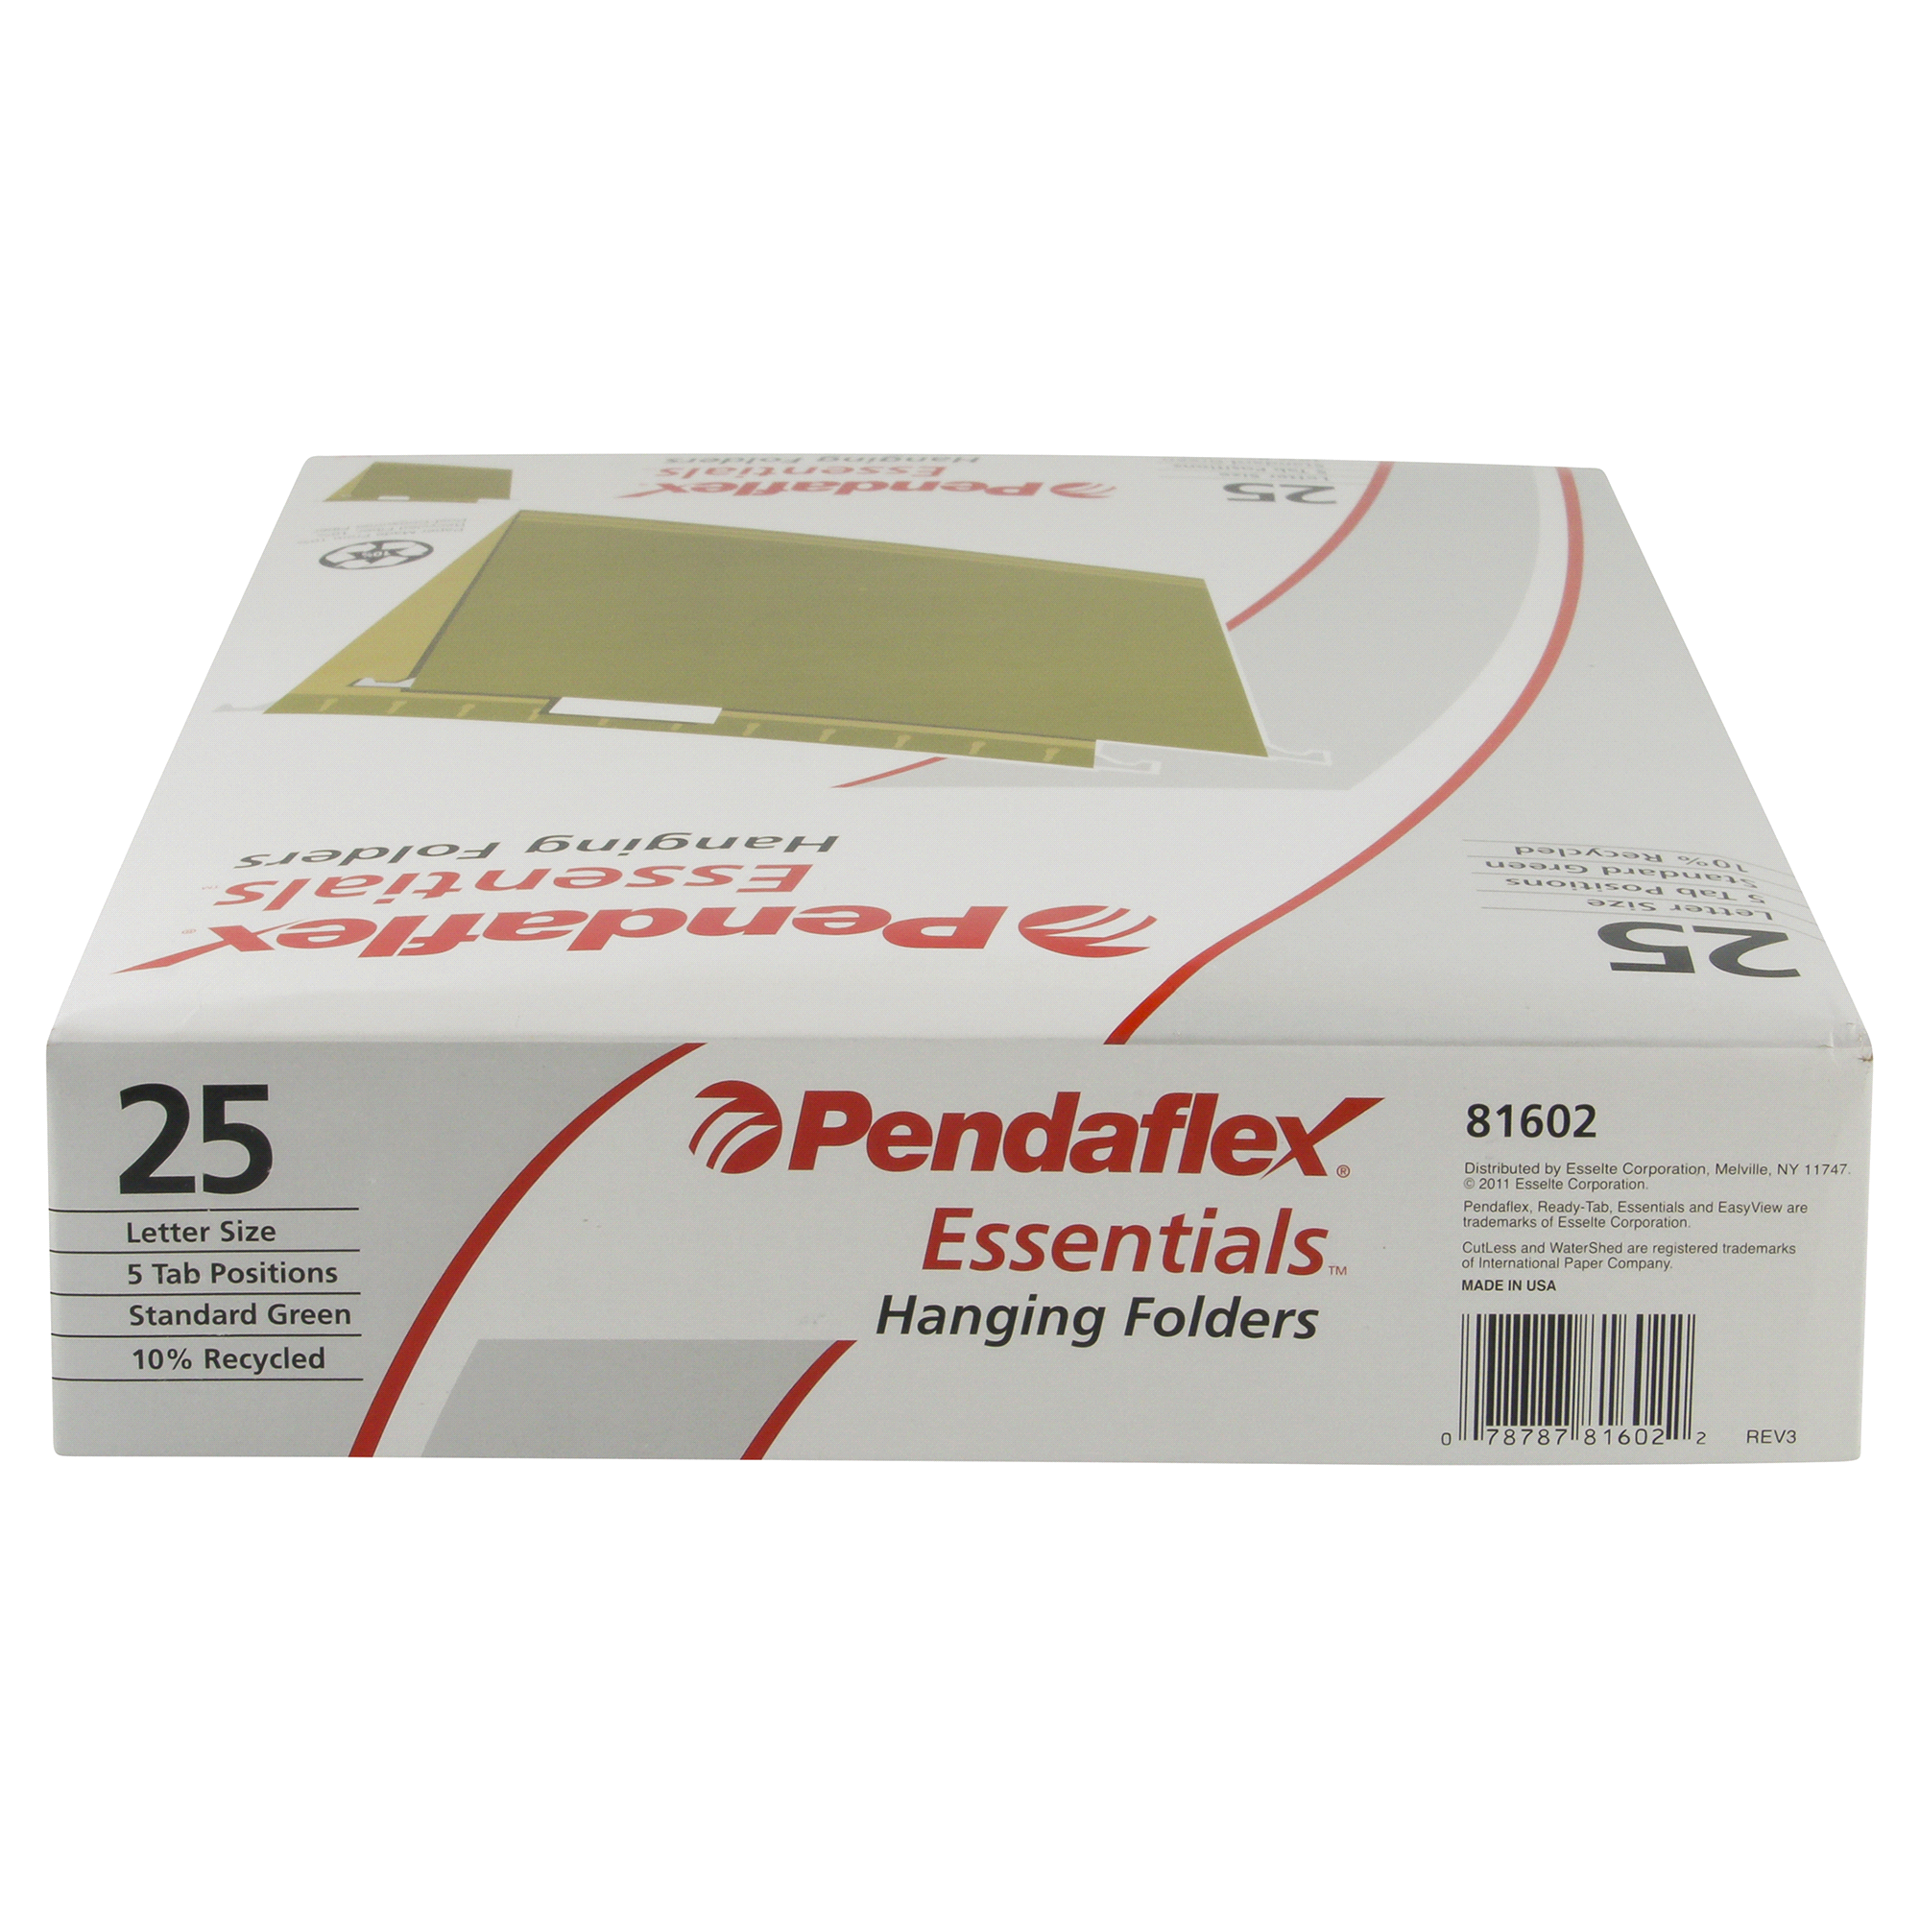 slide 9 of 17, Pendaflex Folders 25 ea, 25 ct